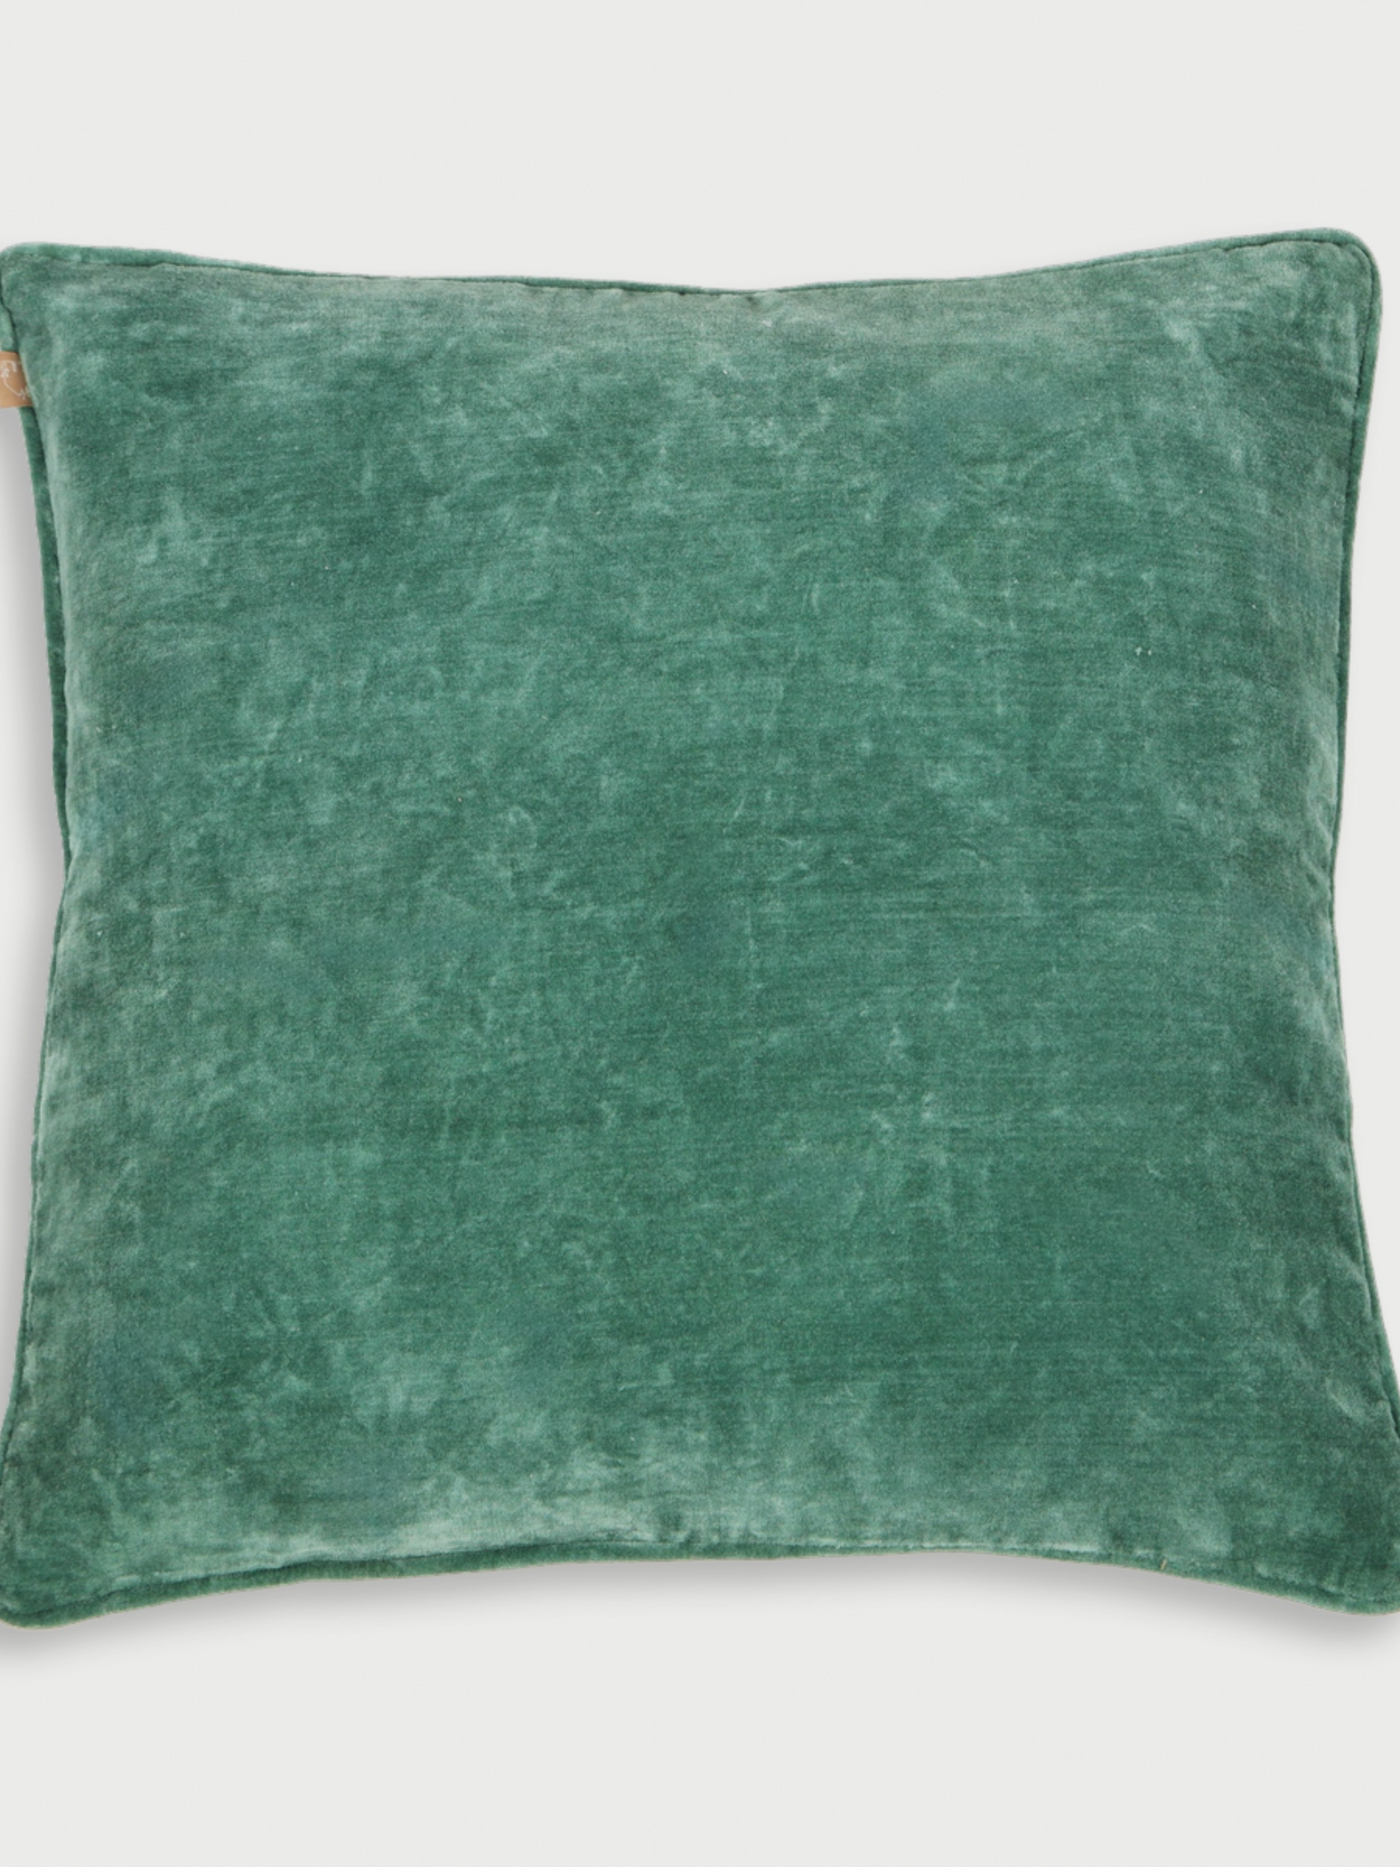 Cushion Cover - Eucalyptus Velvet Euro Sham